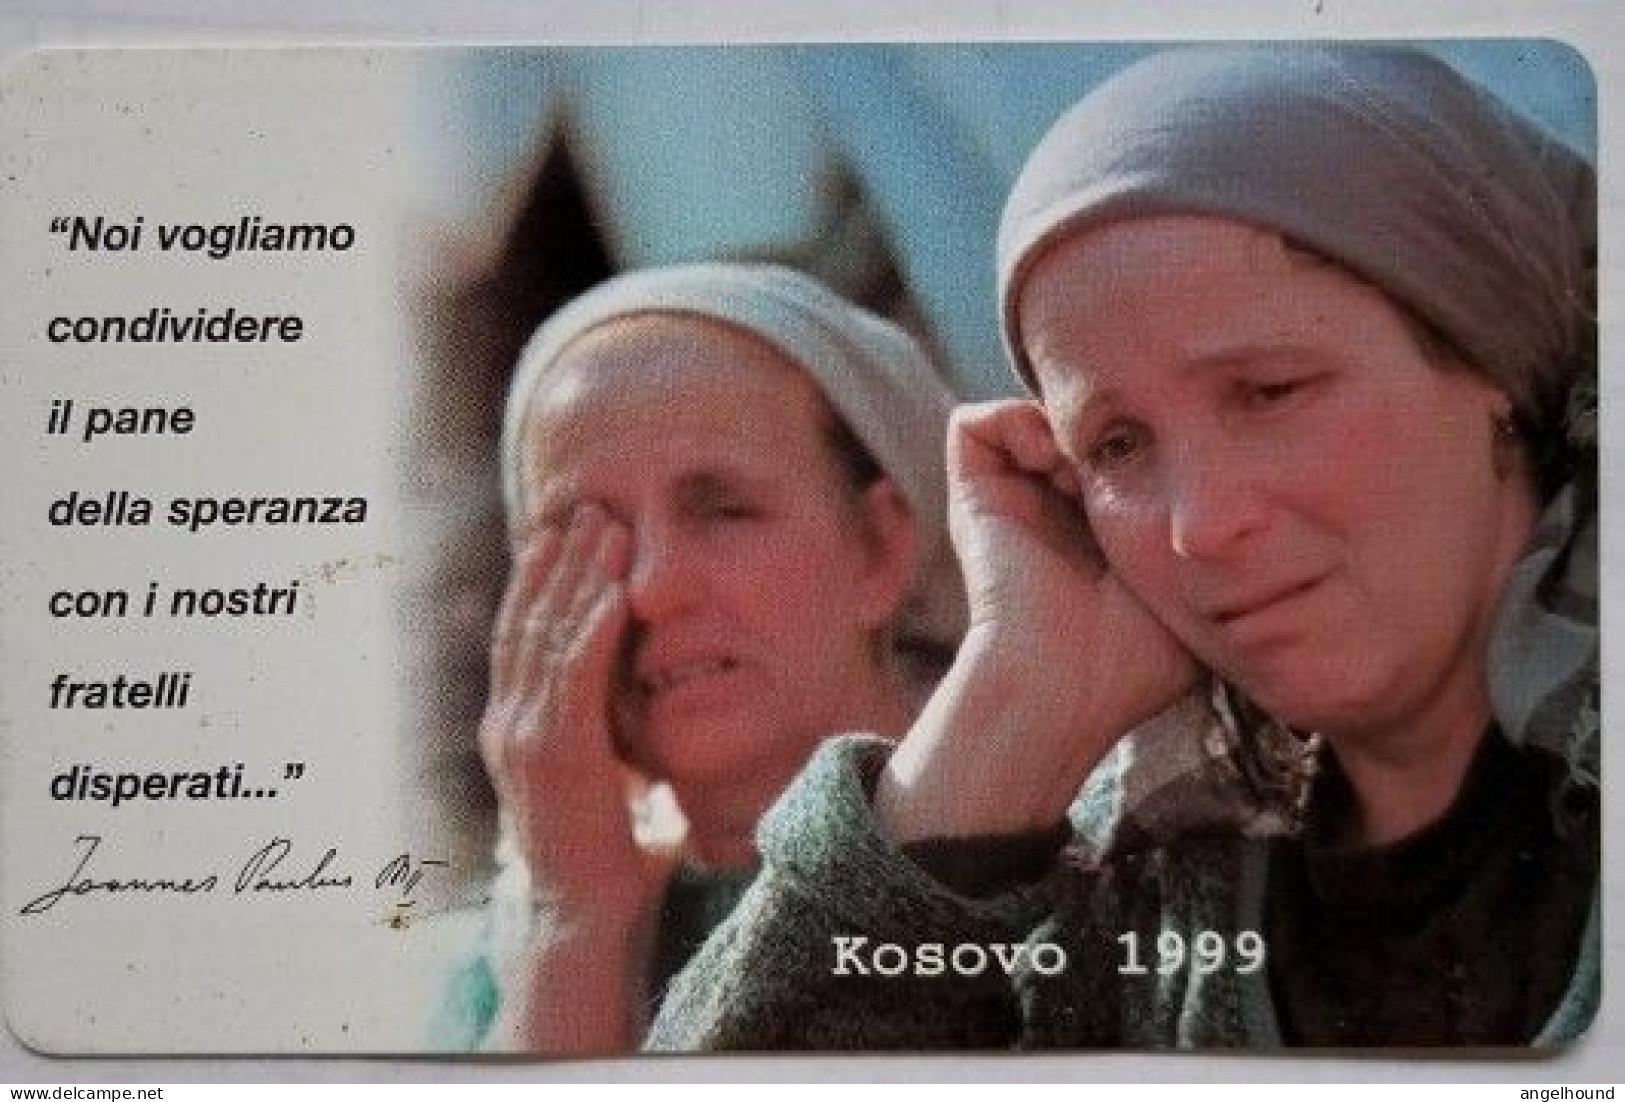 Vatican L5000  SCV - 64  " Kosovo 1999 " - Vatikan